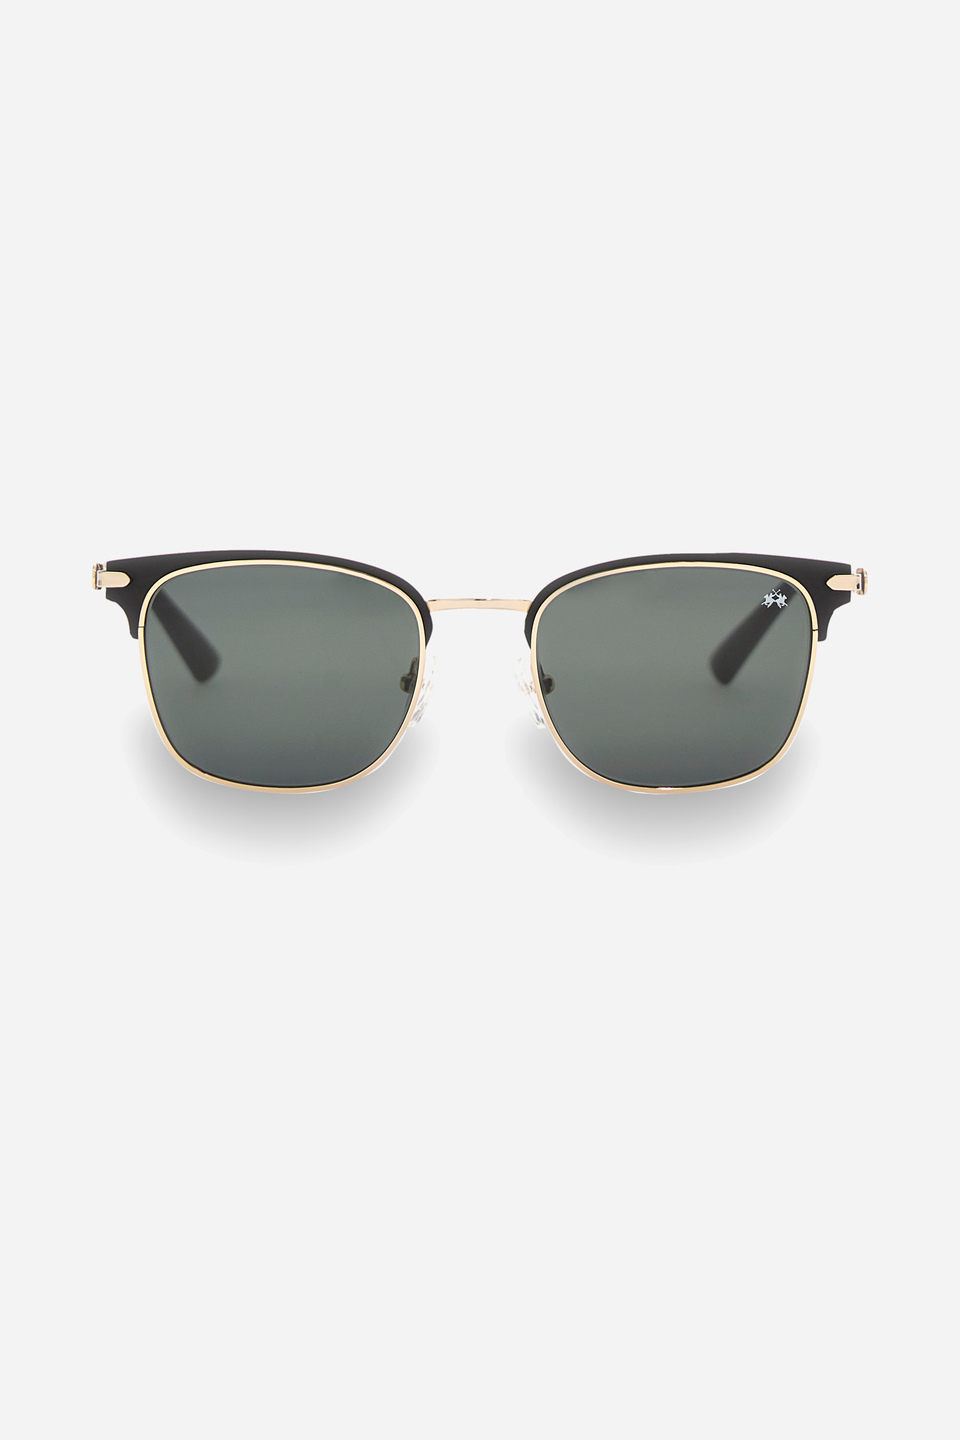 Pantos model sunglasses | La Martina - Official Online Shop